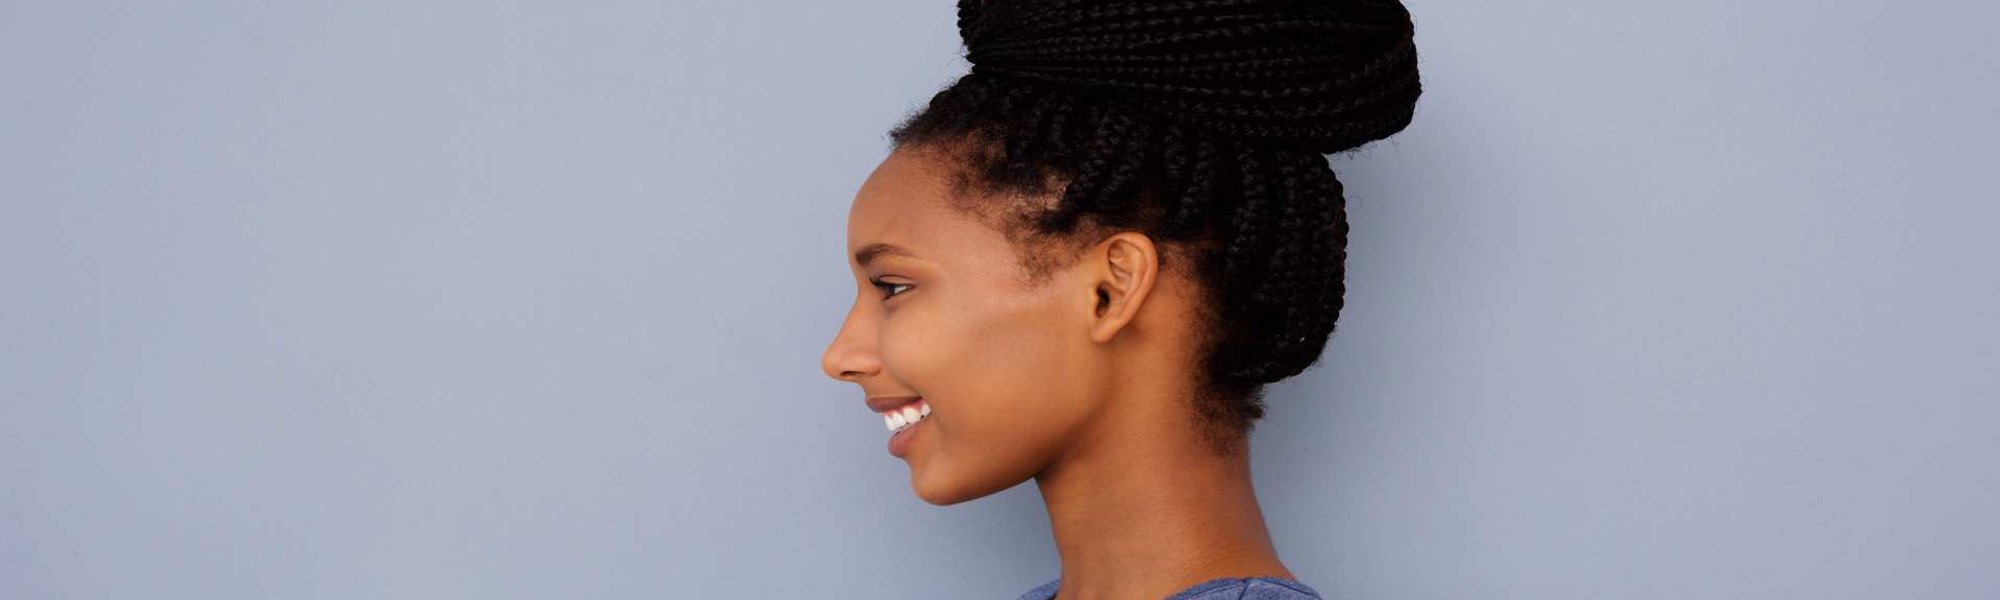 Penteado de festa para cabelos cacheados e crespos: siga o passo a passo e  aprenda a fazer um coque alto com tranças em detalhes!| L'Oréal Paris